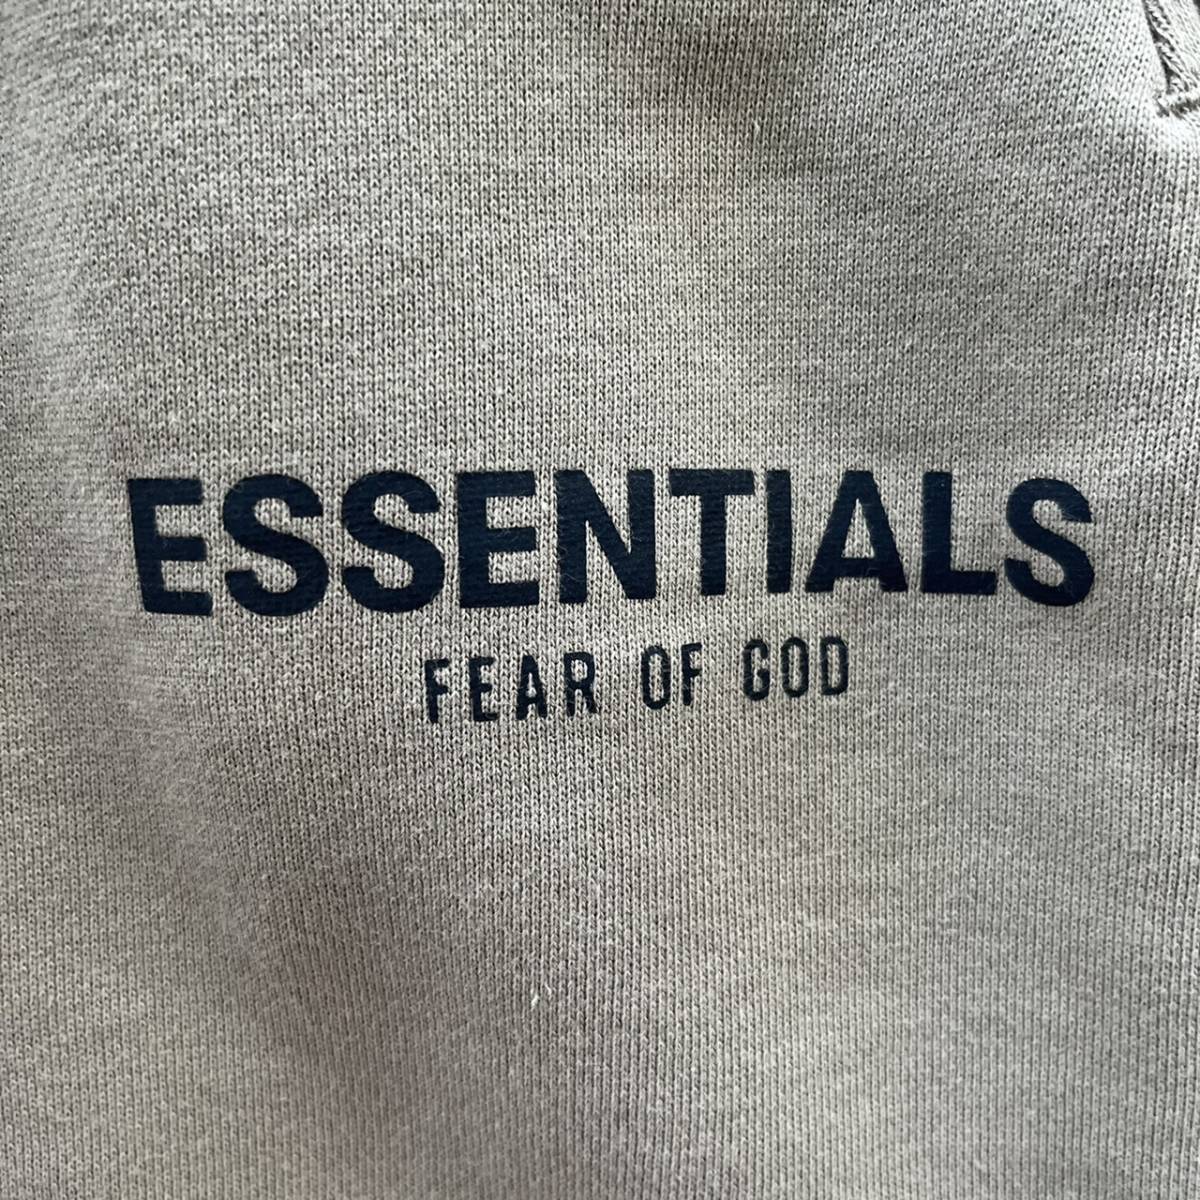 新品 FOG Fear Of God Essentials フィアオブゴッド エッセンシャルズ Sサイズ LOGO ショーツ ハーフパンツ オリーブ Olive